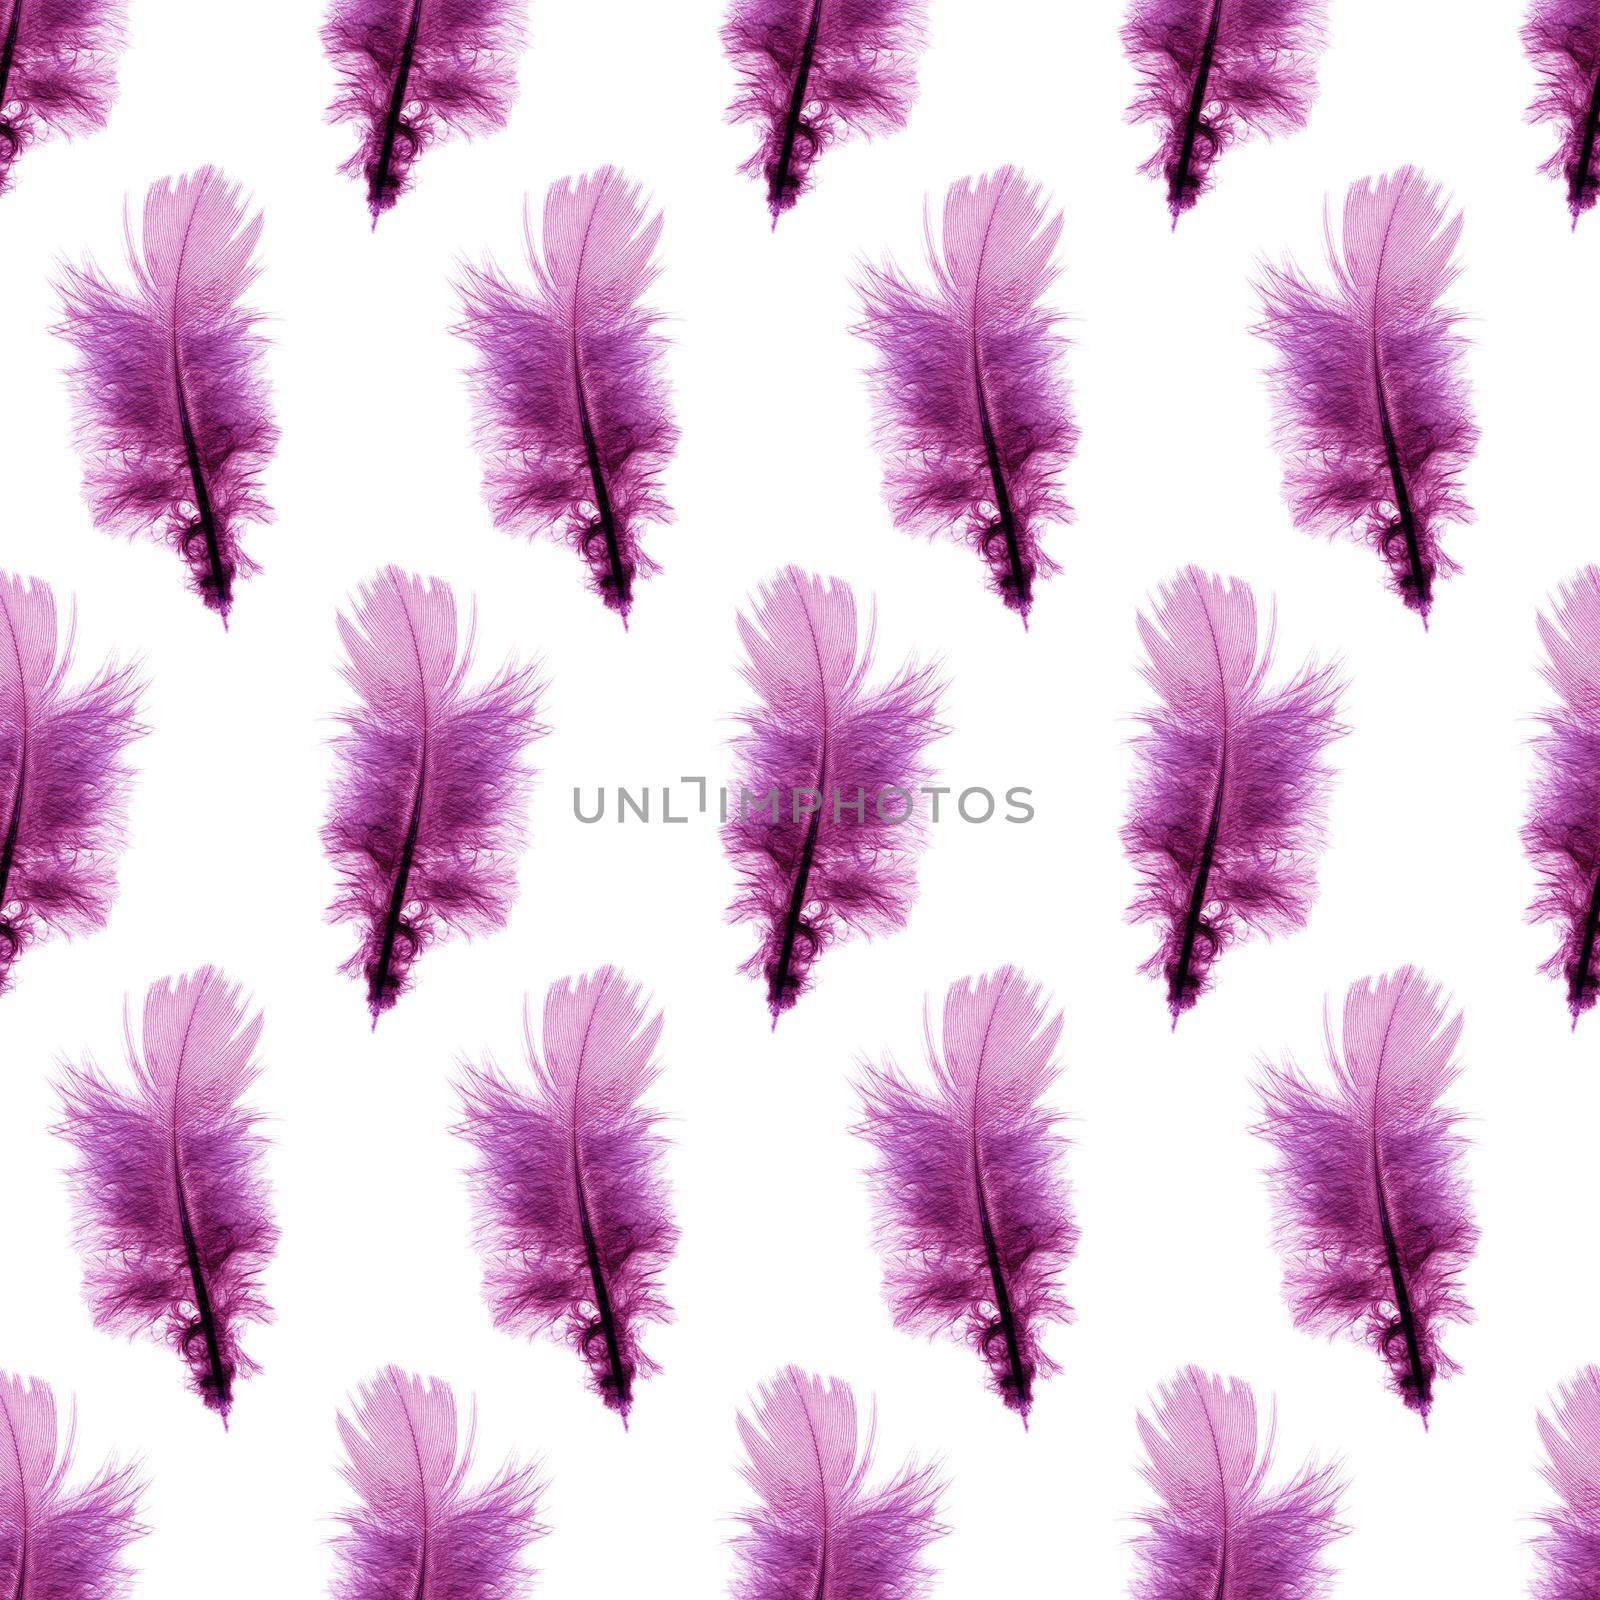 Purple feathers pattern by Lirch